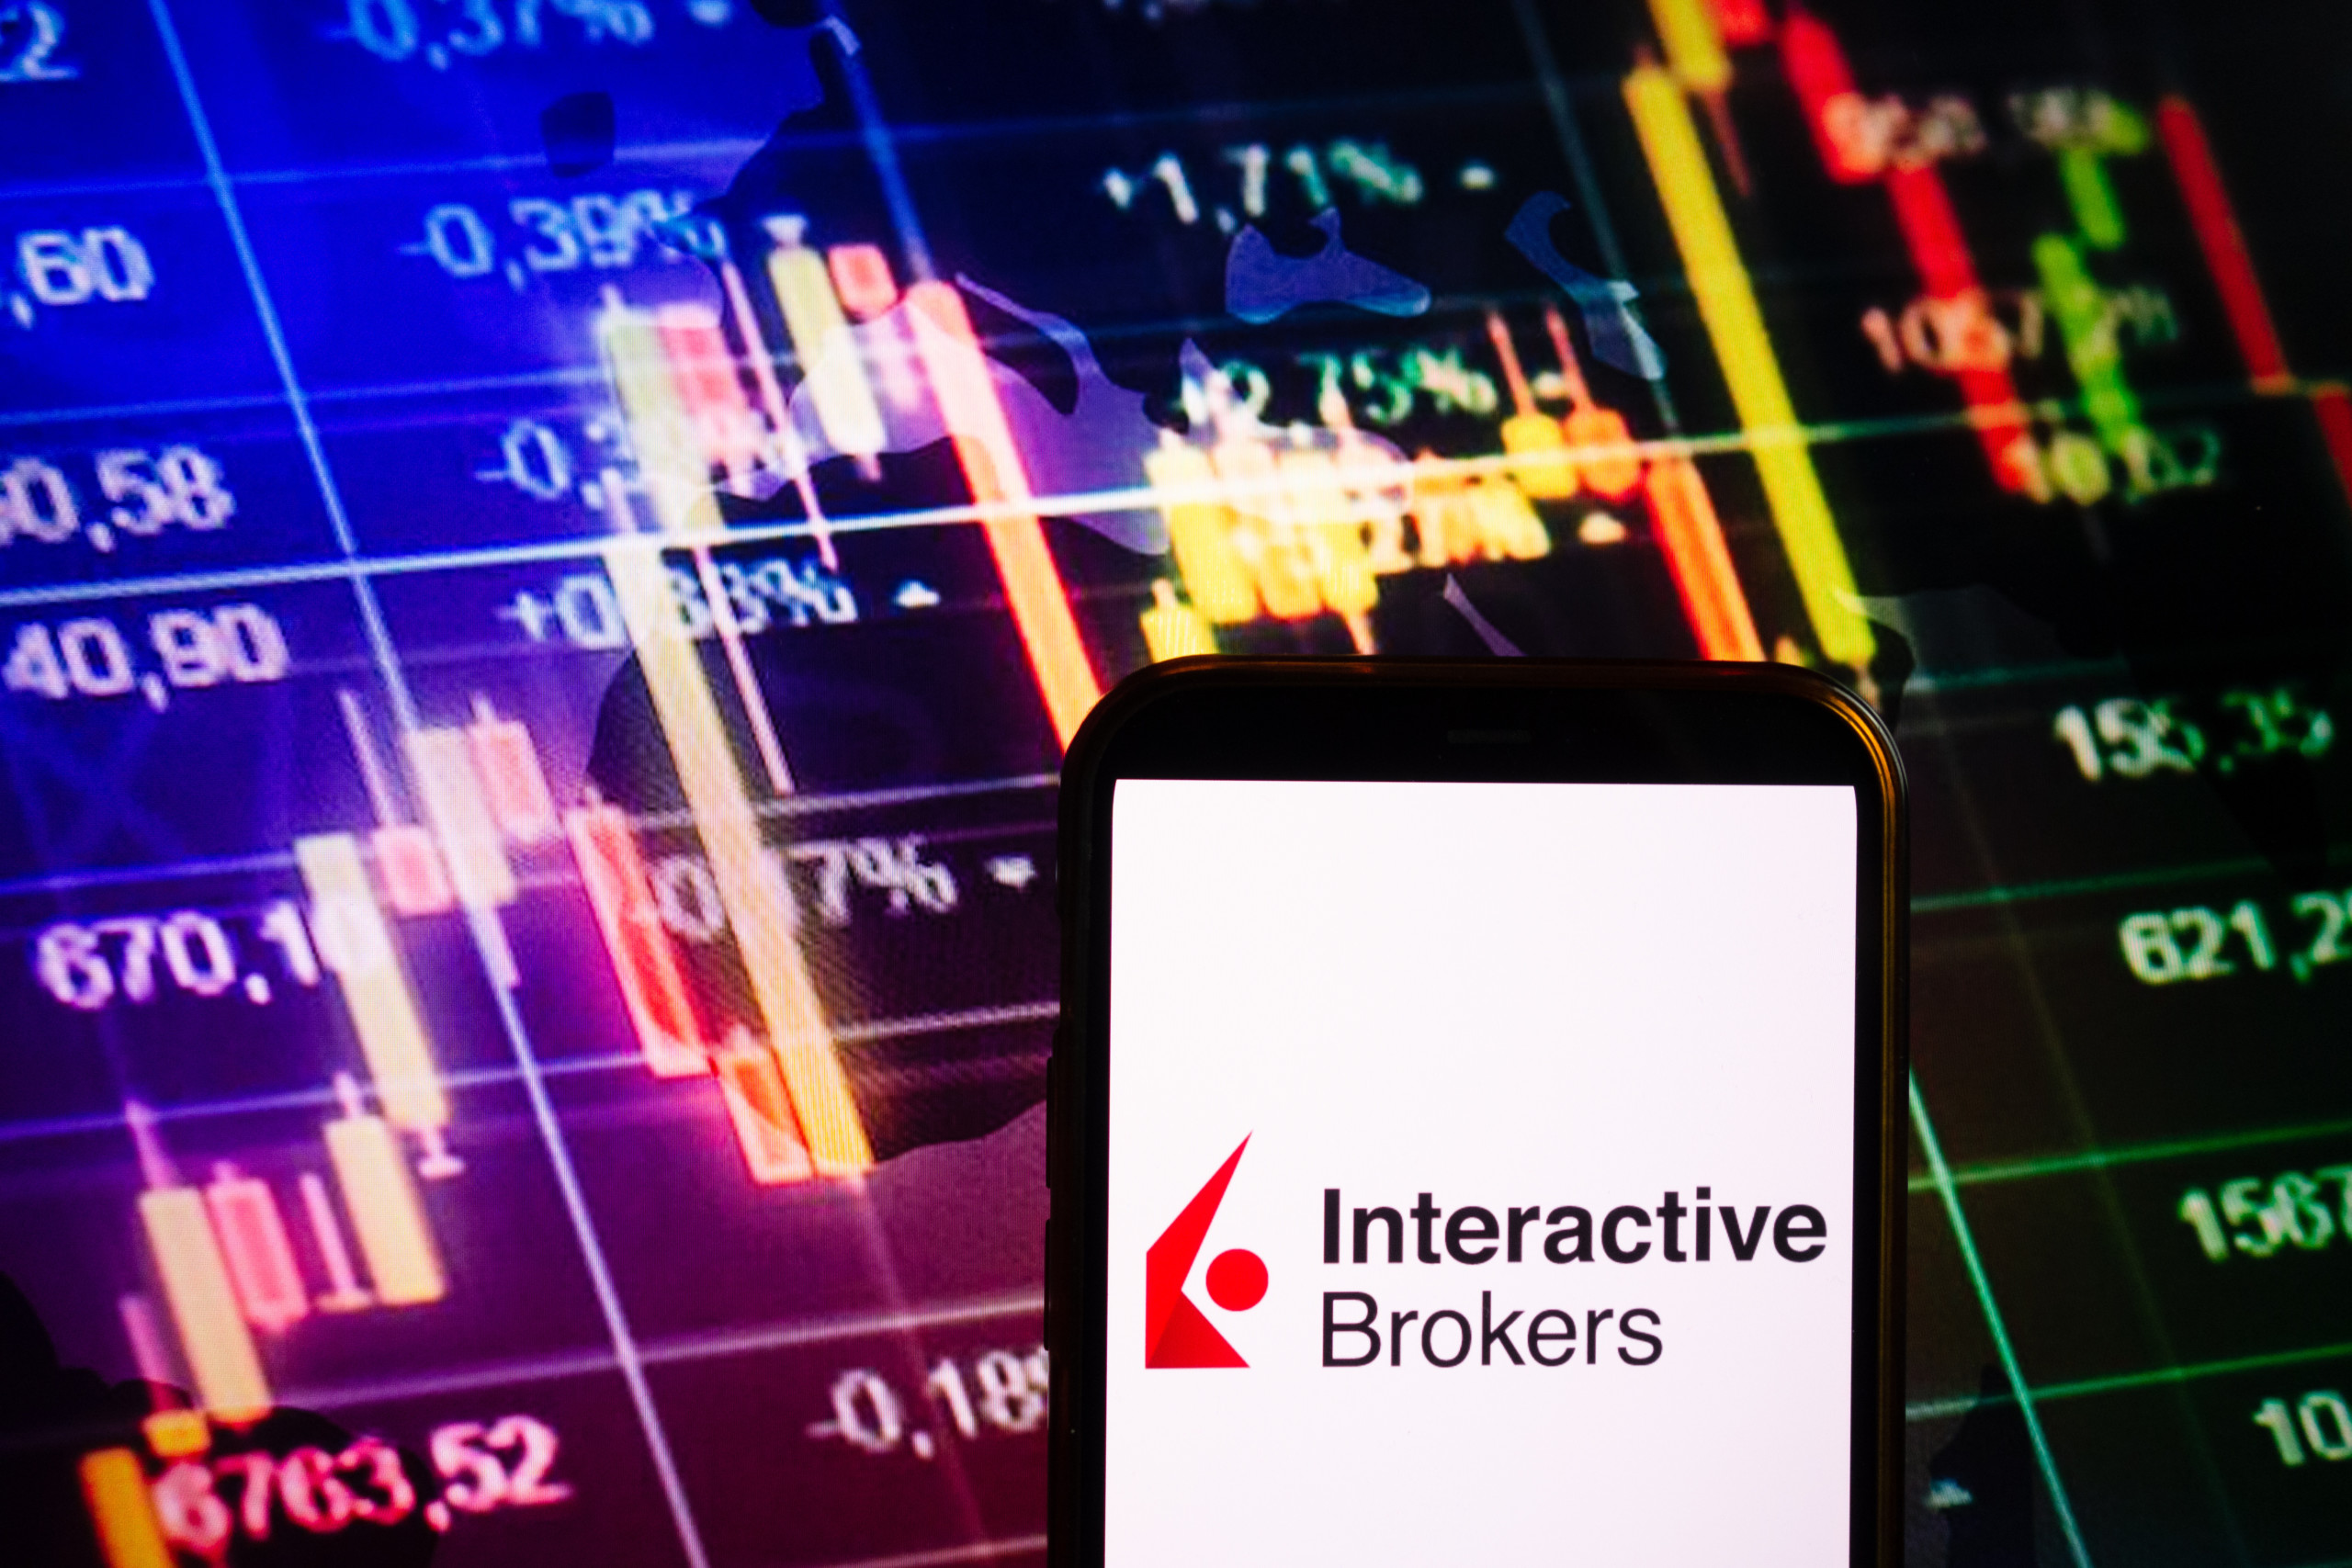 Interactive Brokers verzeichnet Kundenboom: Fast 200.000 neue Konten im ersten Quartal und Annäherung an eine halbe Billion USD Kundenvermögen